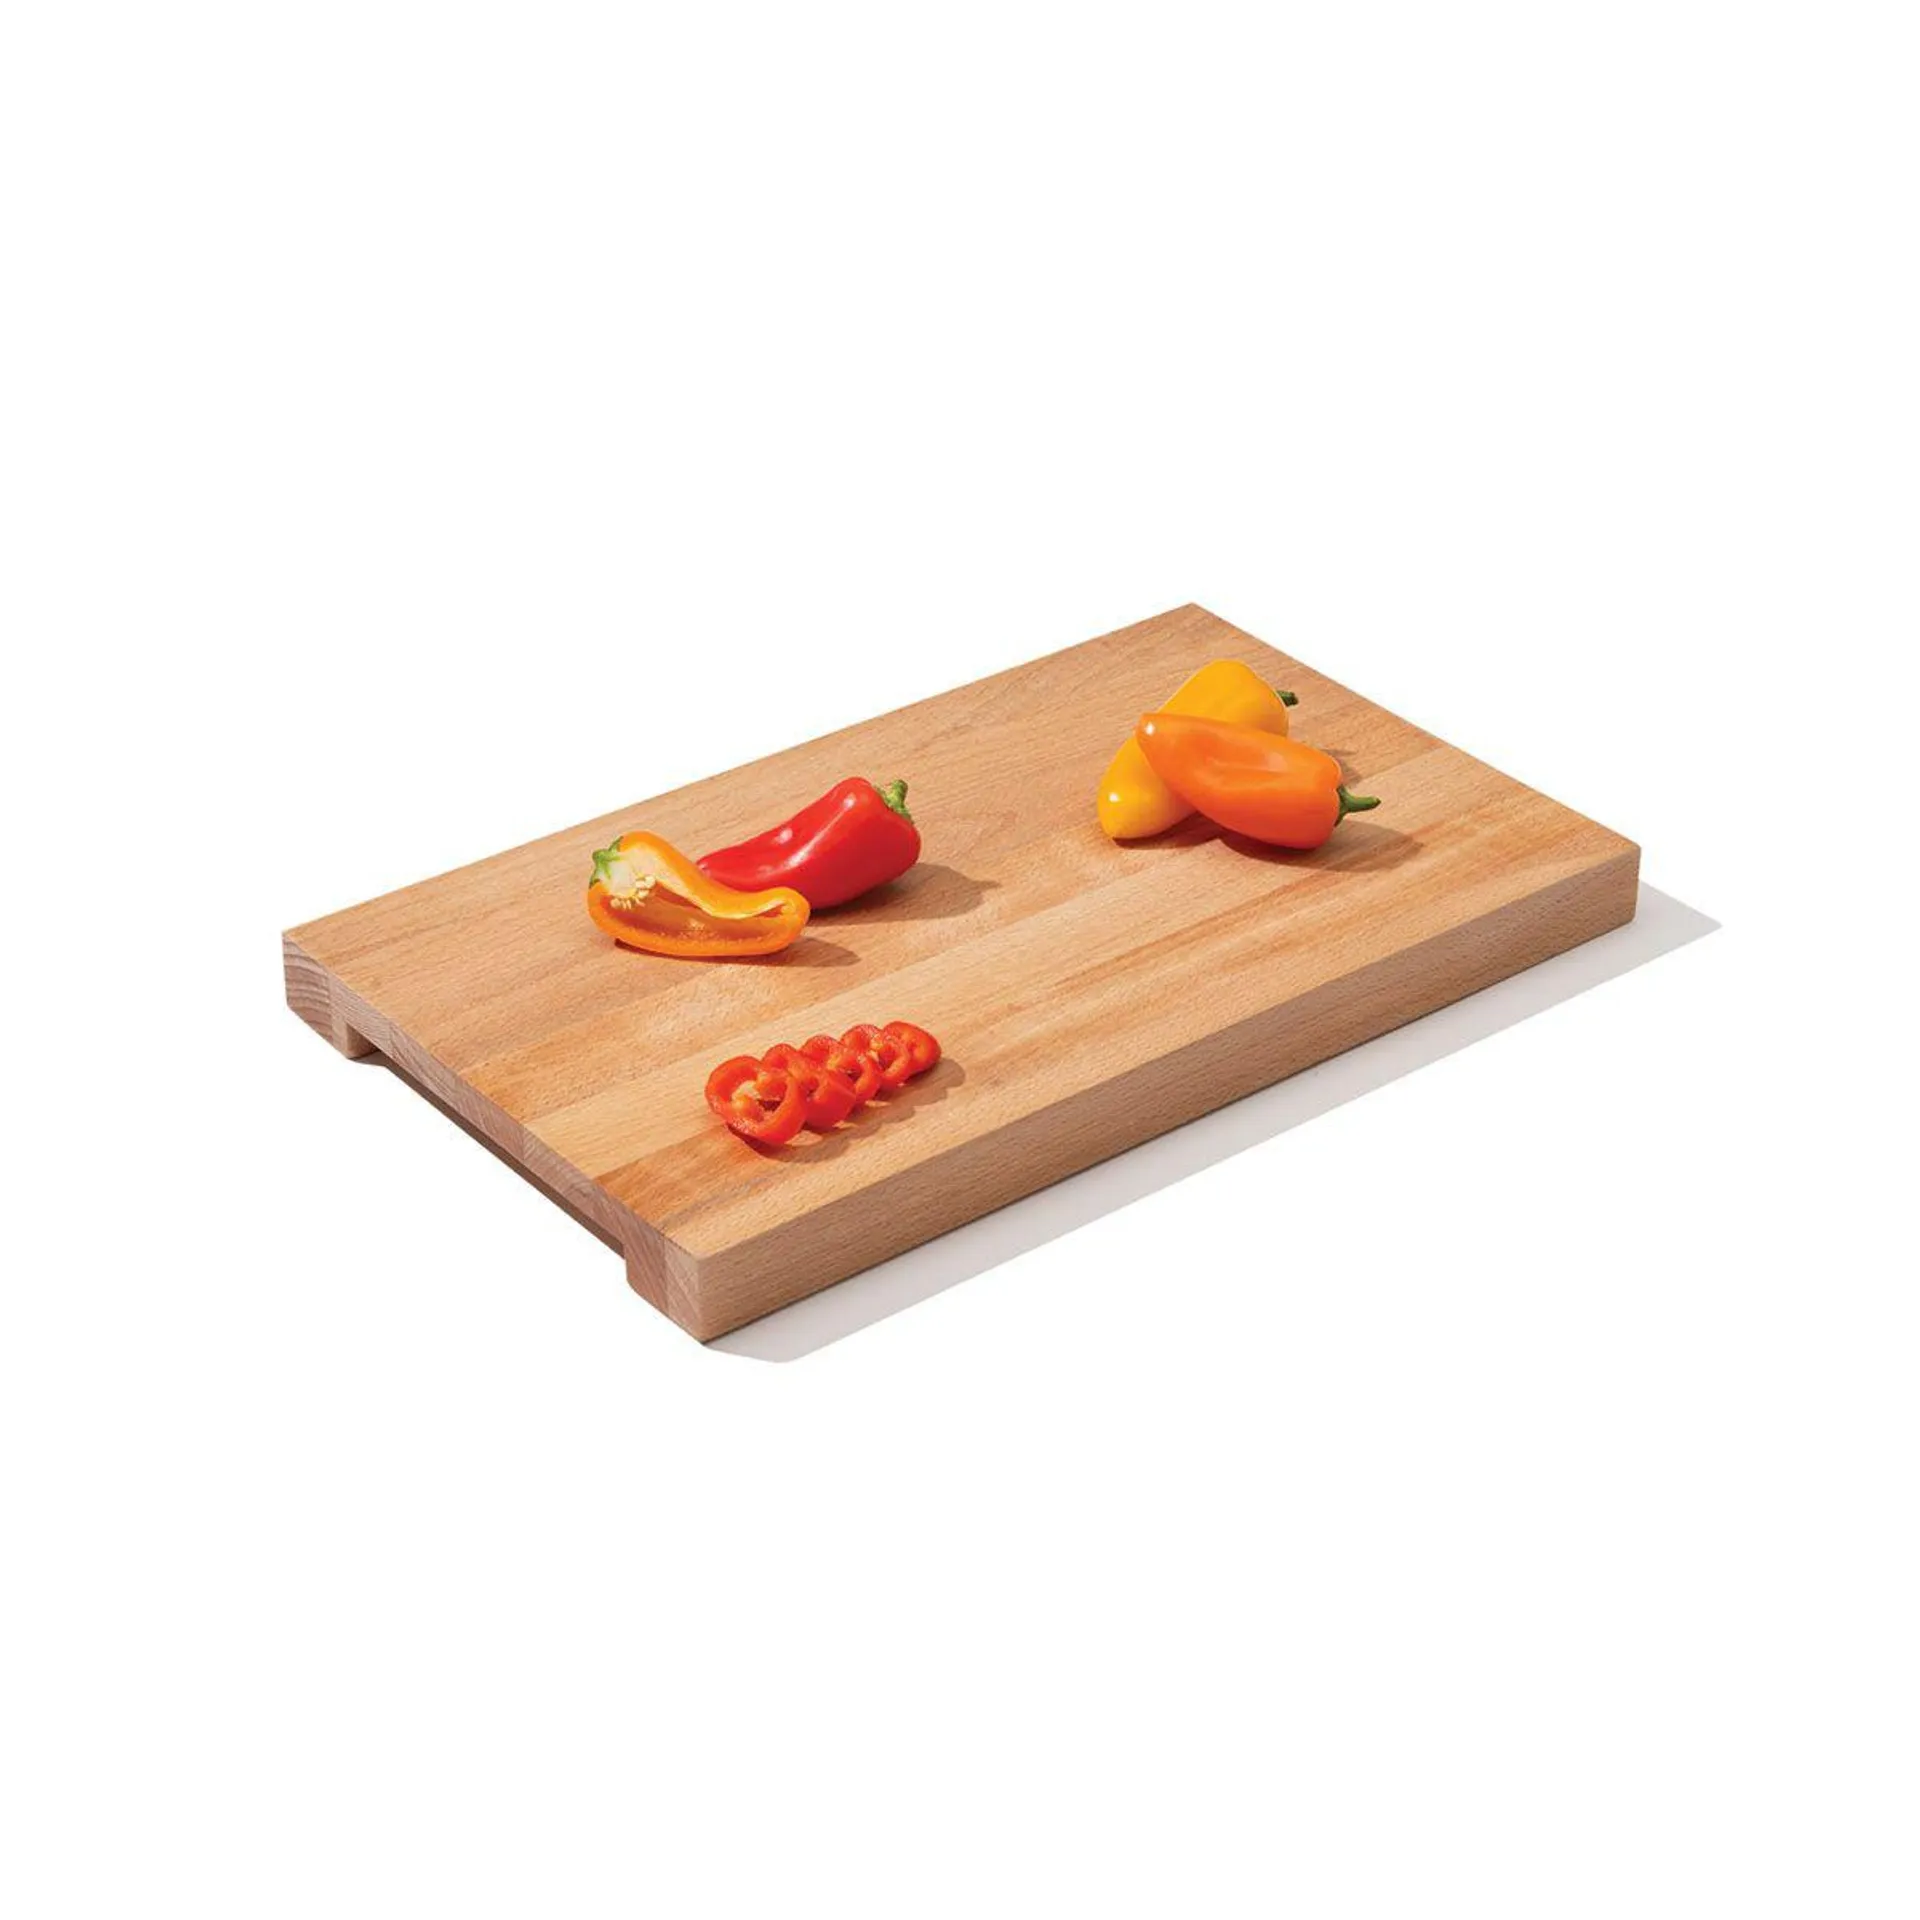 Cutting board 37.5 x 22.5 cm